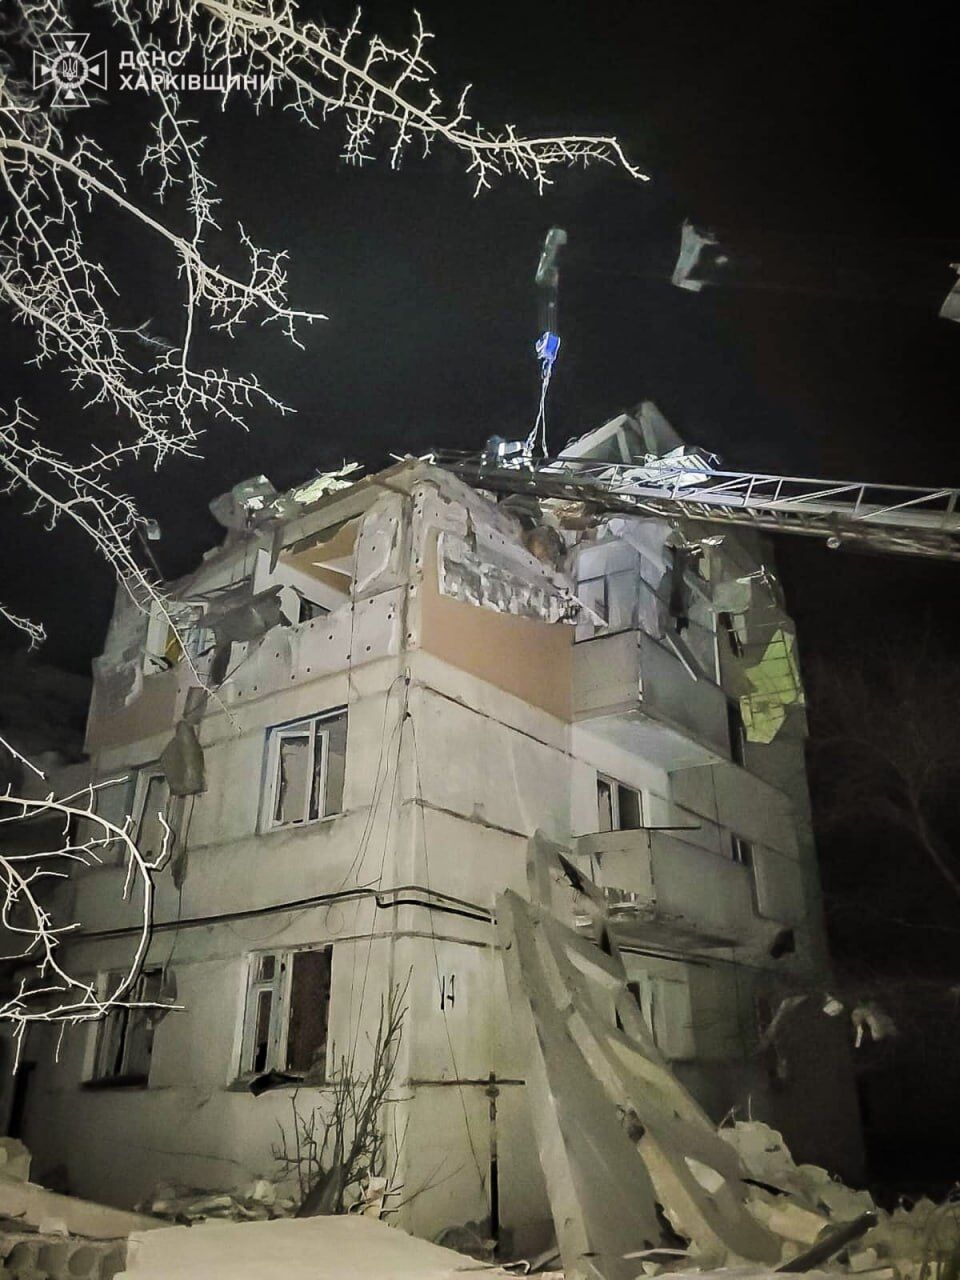 Okupanci zrzucają bombę kierowaną na wieżowiec w Kupiańsku w Charkowie: kobieta ginie pod gruzami. Zdjęcie